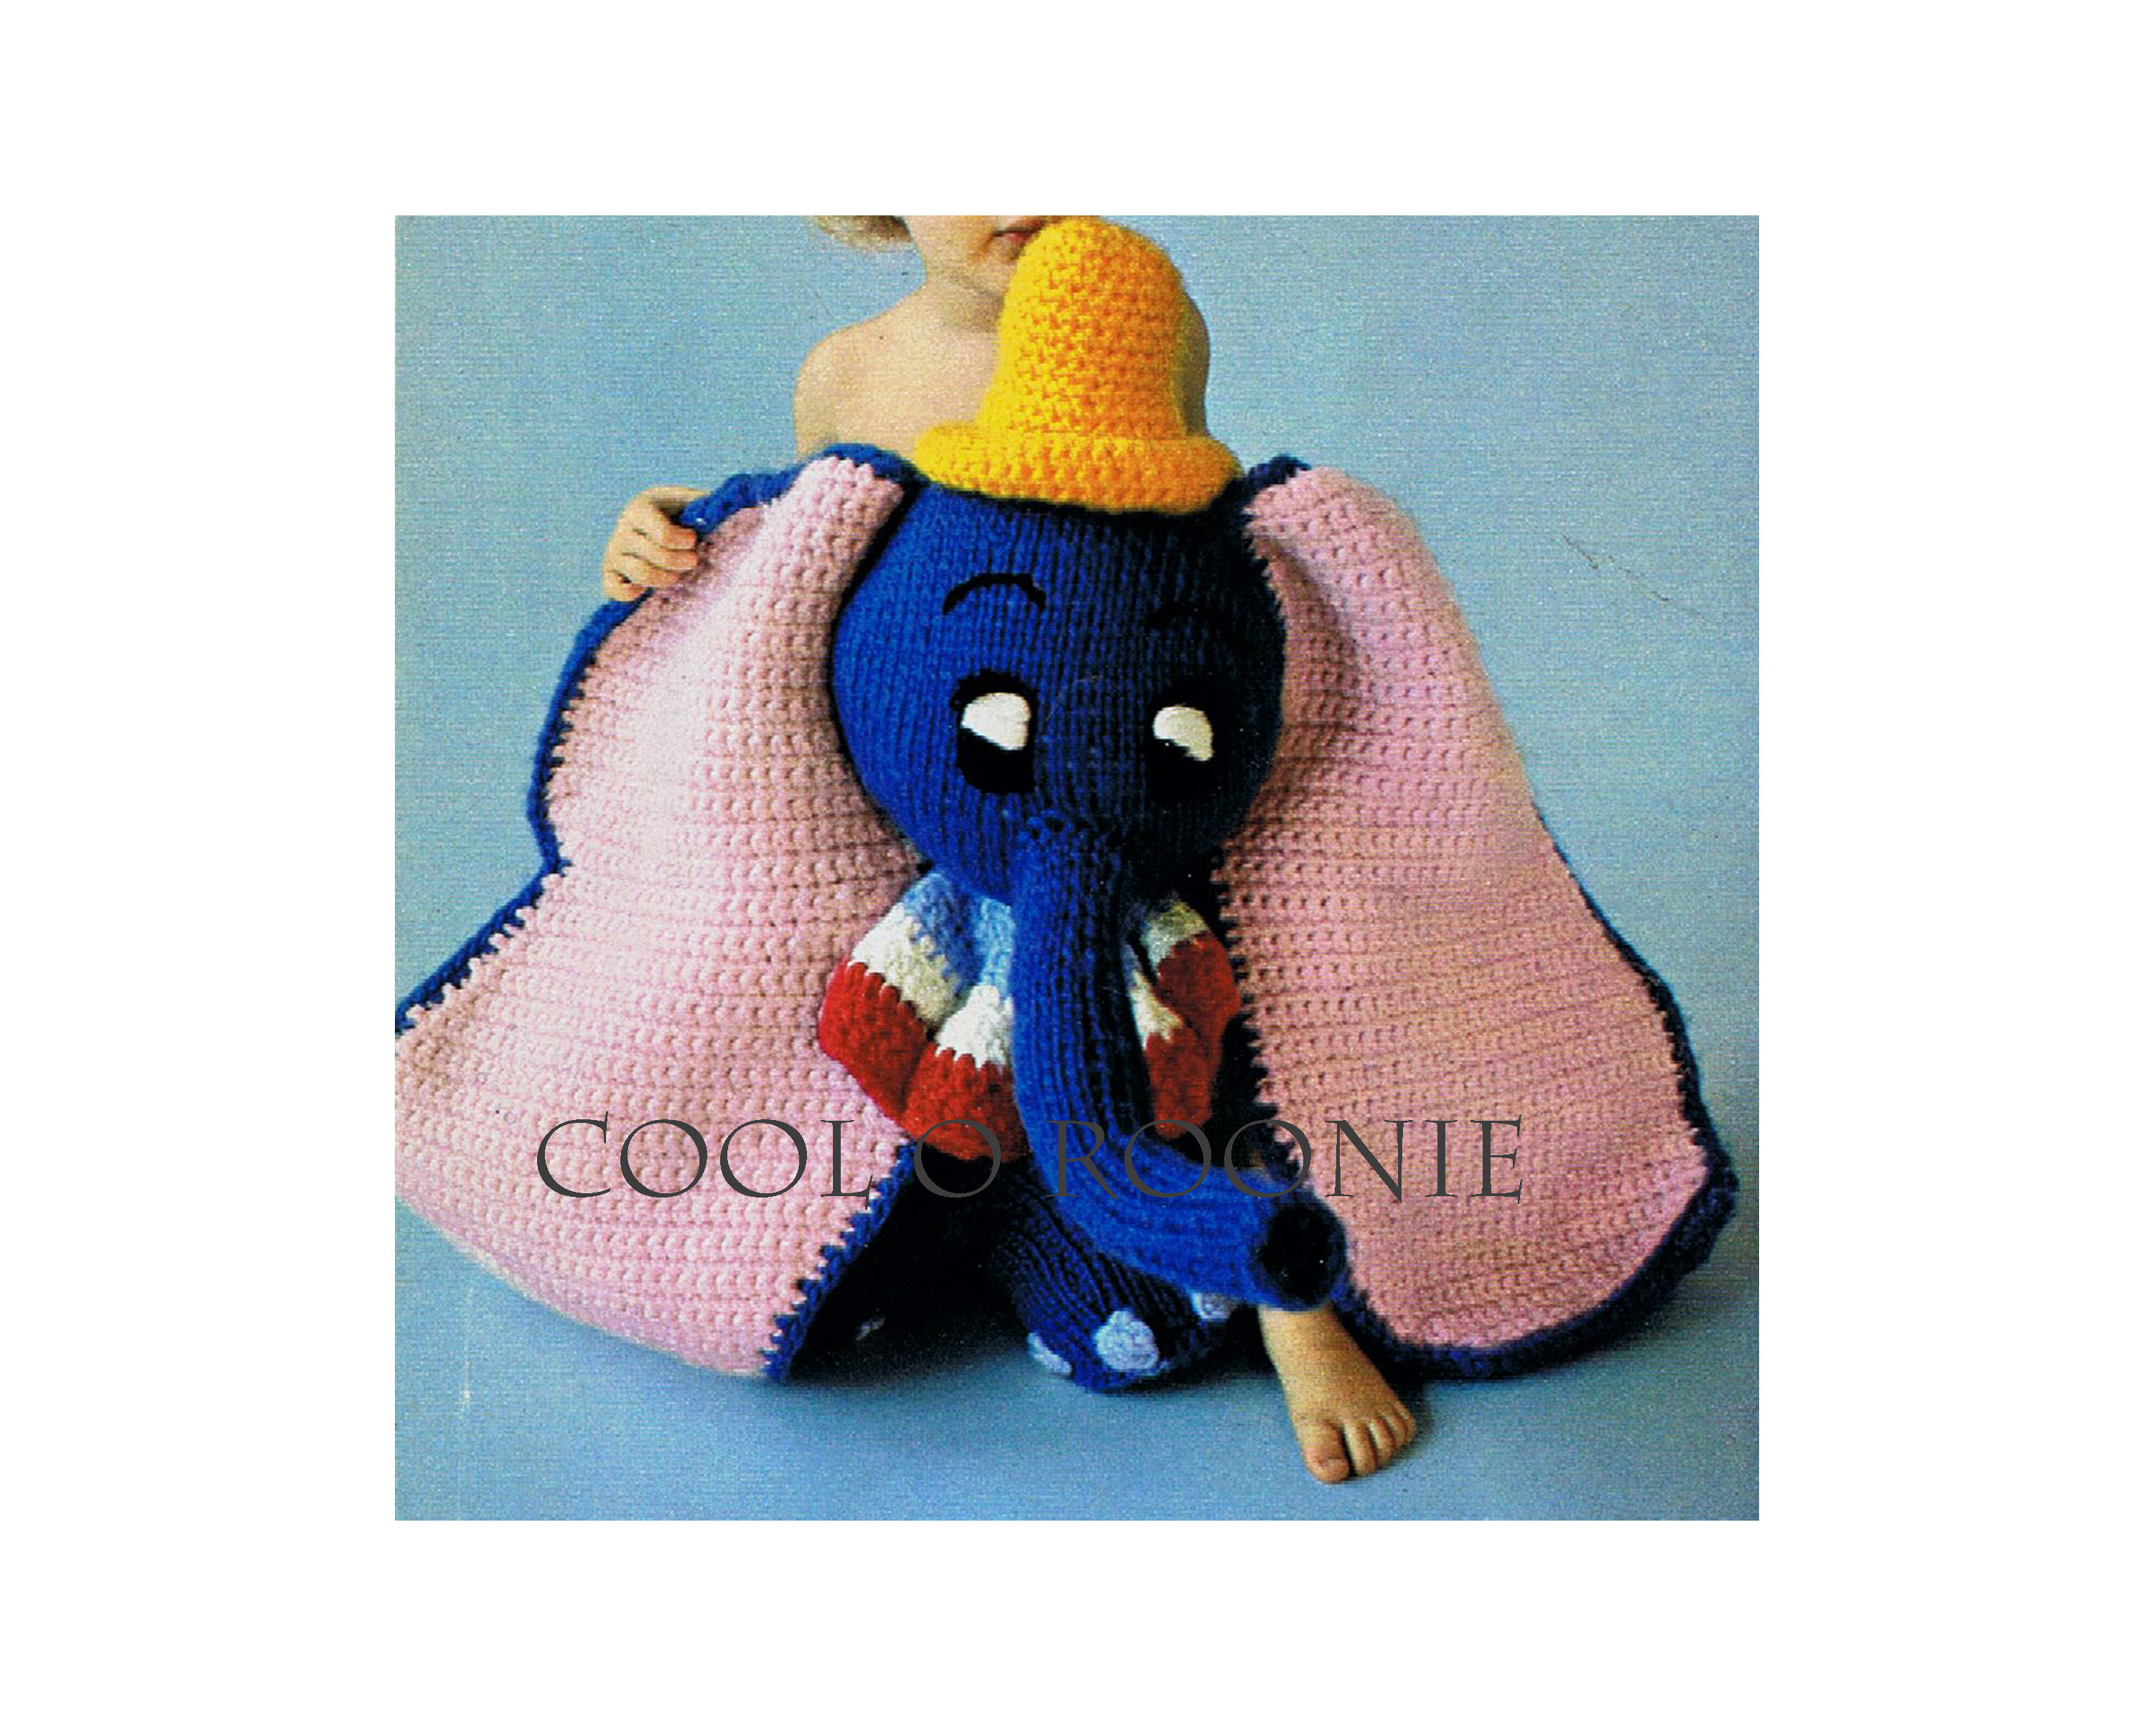 Crochet Dumbo Pattern Dumbo Knitting Crochet Pattern Vintage Stuffed Animal Etsy